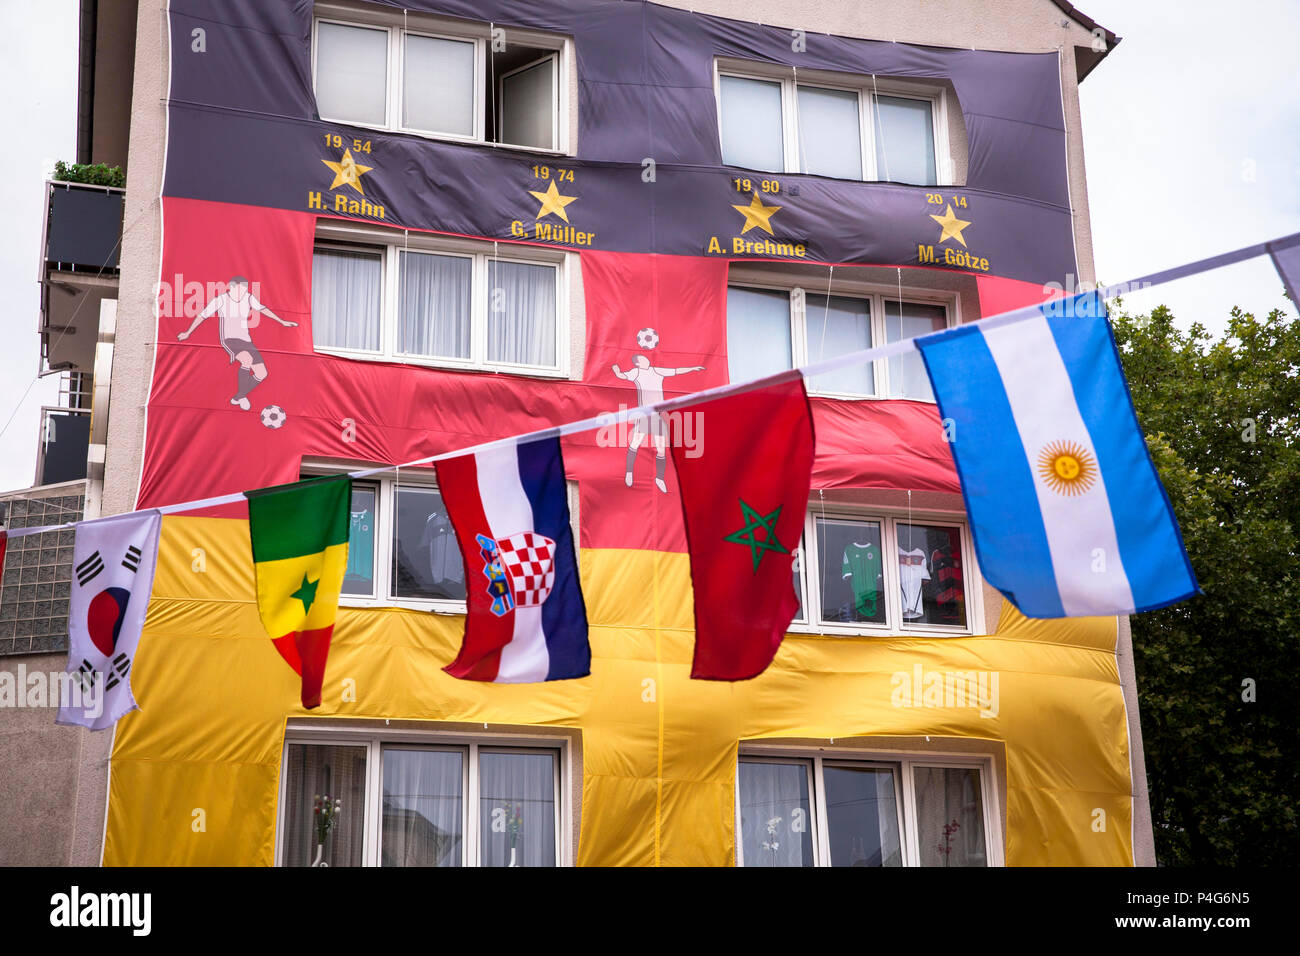 Köln, Deutschland, 22. Juni, 2018. Mit einer riesigen deutschen Fahne abgedeckt Haus während der FIFA Fußball-Weltmeisterschaft 2018. Quelle: Jörn Sackermann/Alamy leben Nachrichten Stockfoto